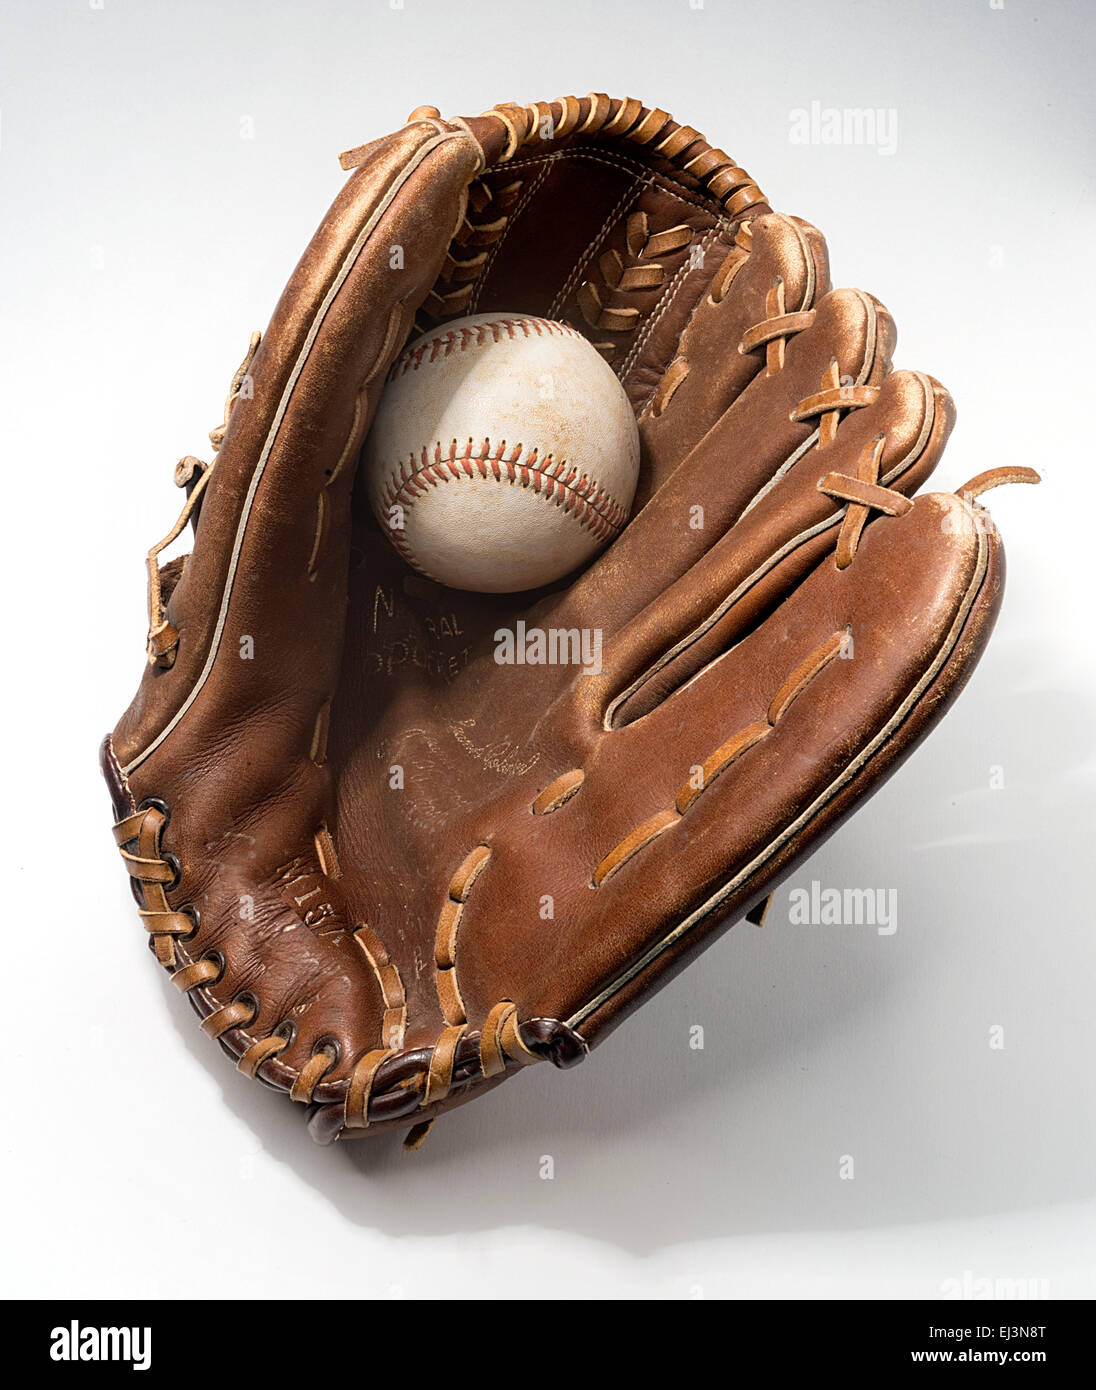 guante de béisbol Foto de stock